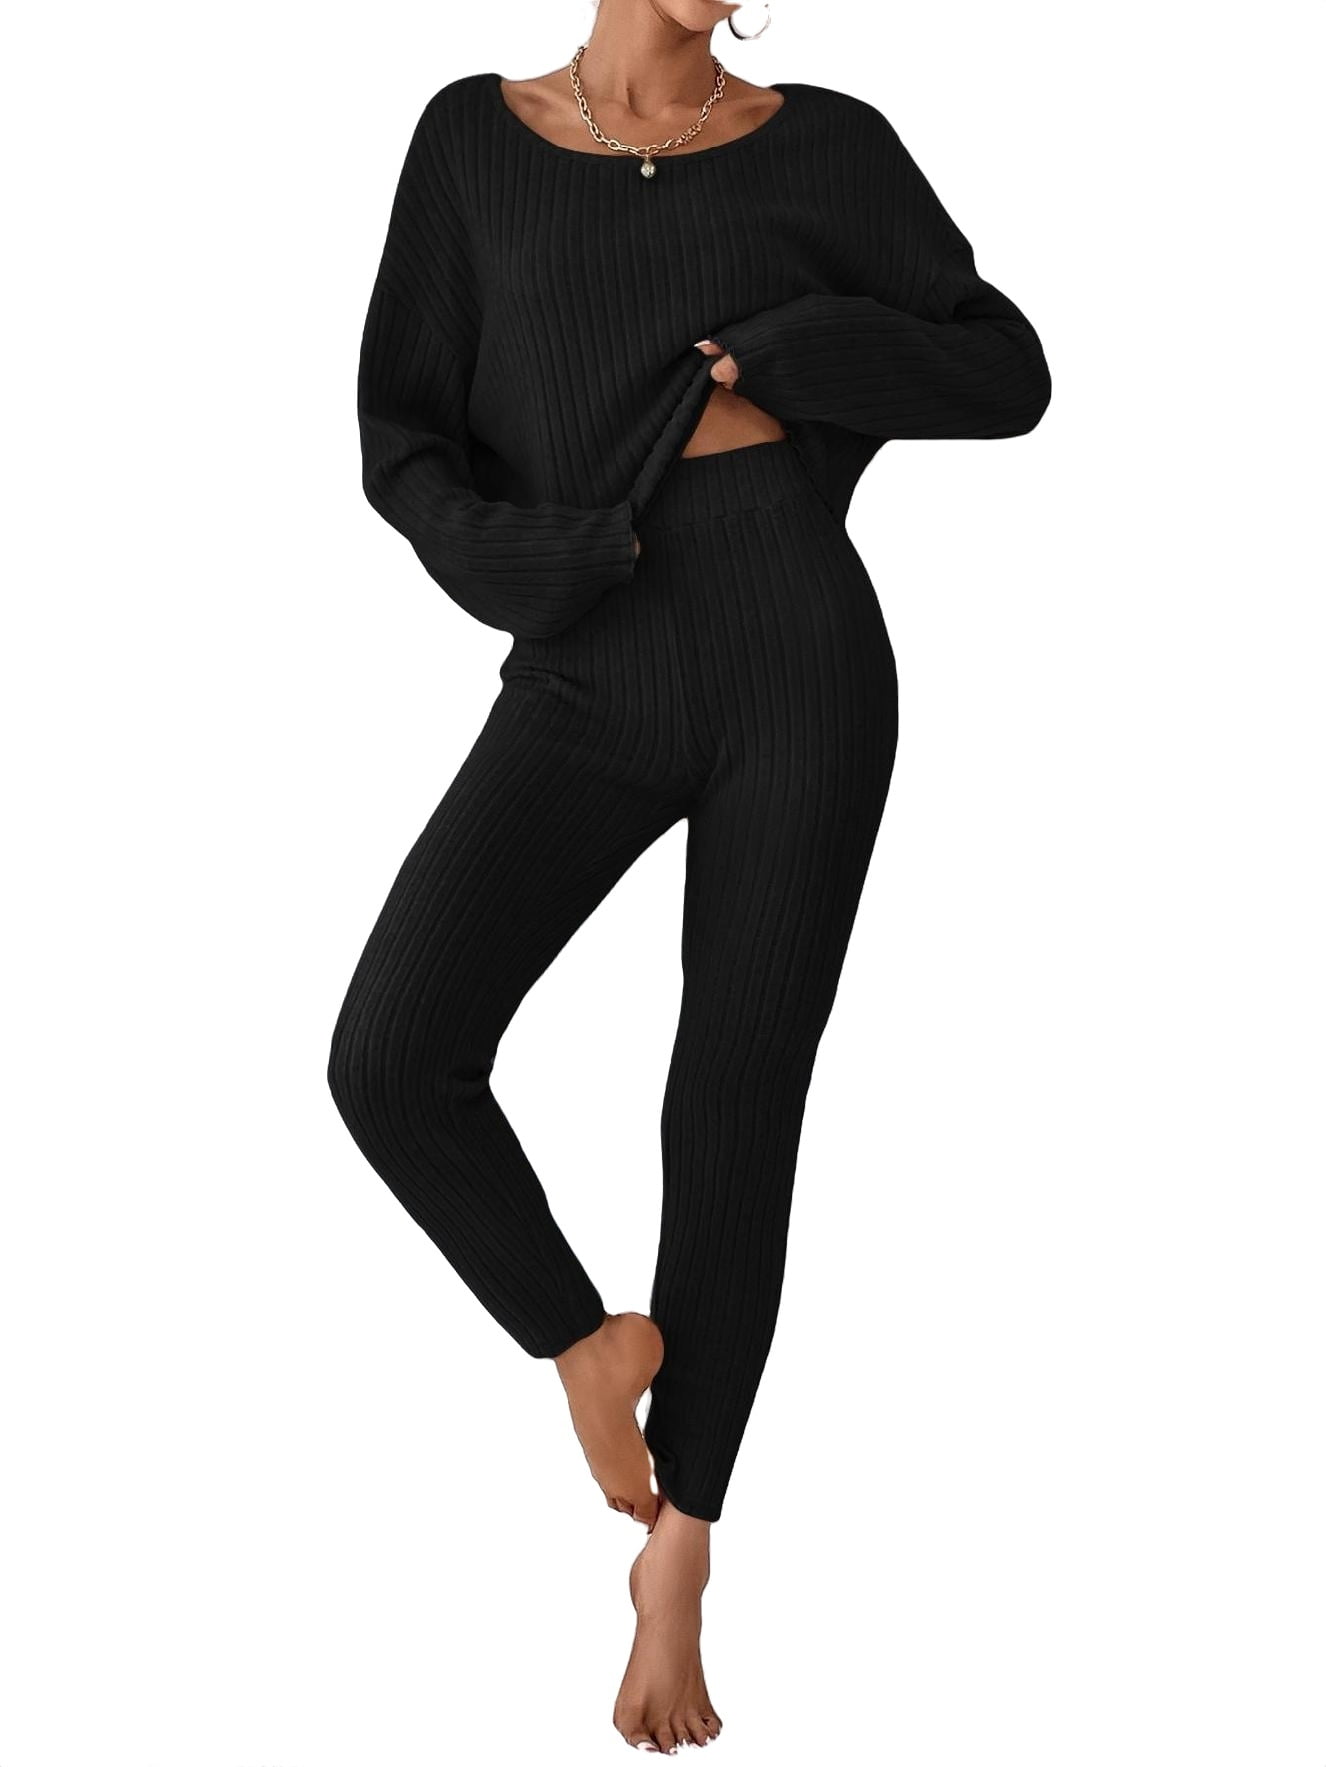 Casual Scoop Neck Long Sleeve Black Womens Tee & Leggings Set (Women's)